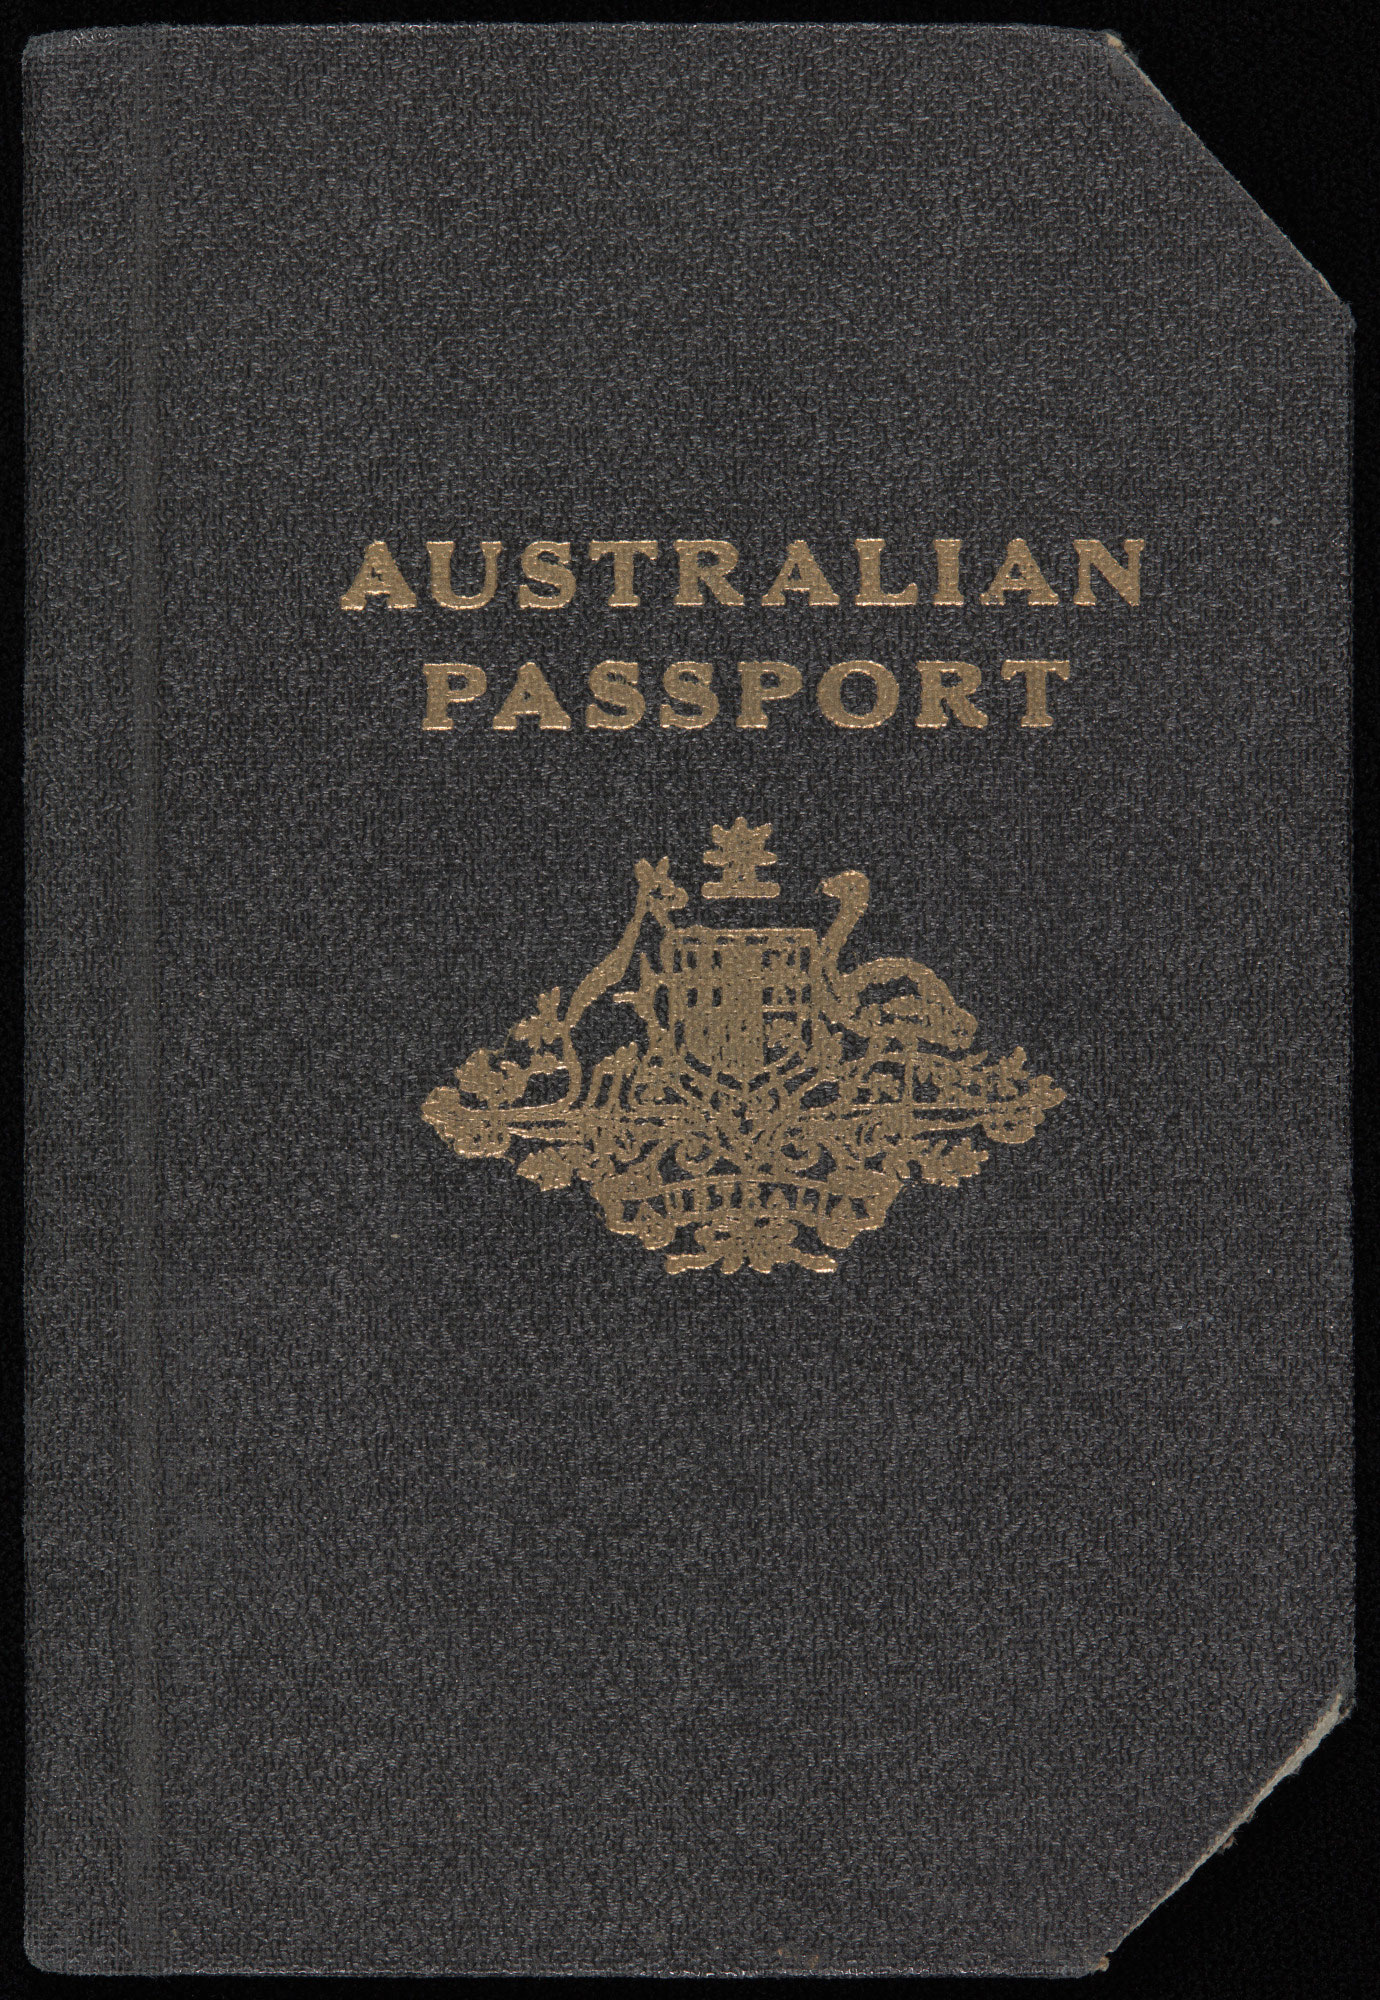 Australian passport issued to Andrew Fabinyi.